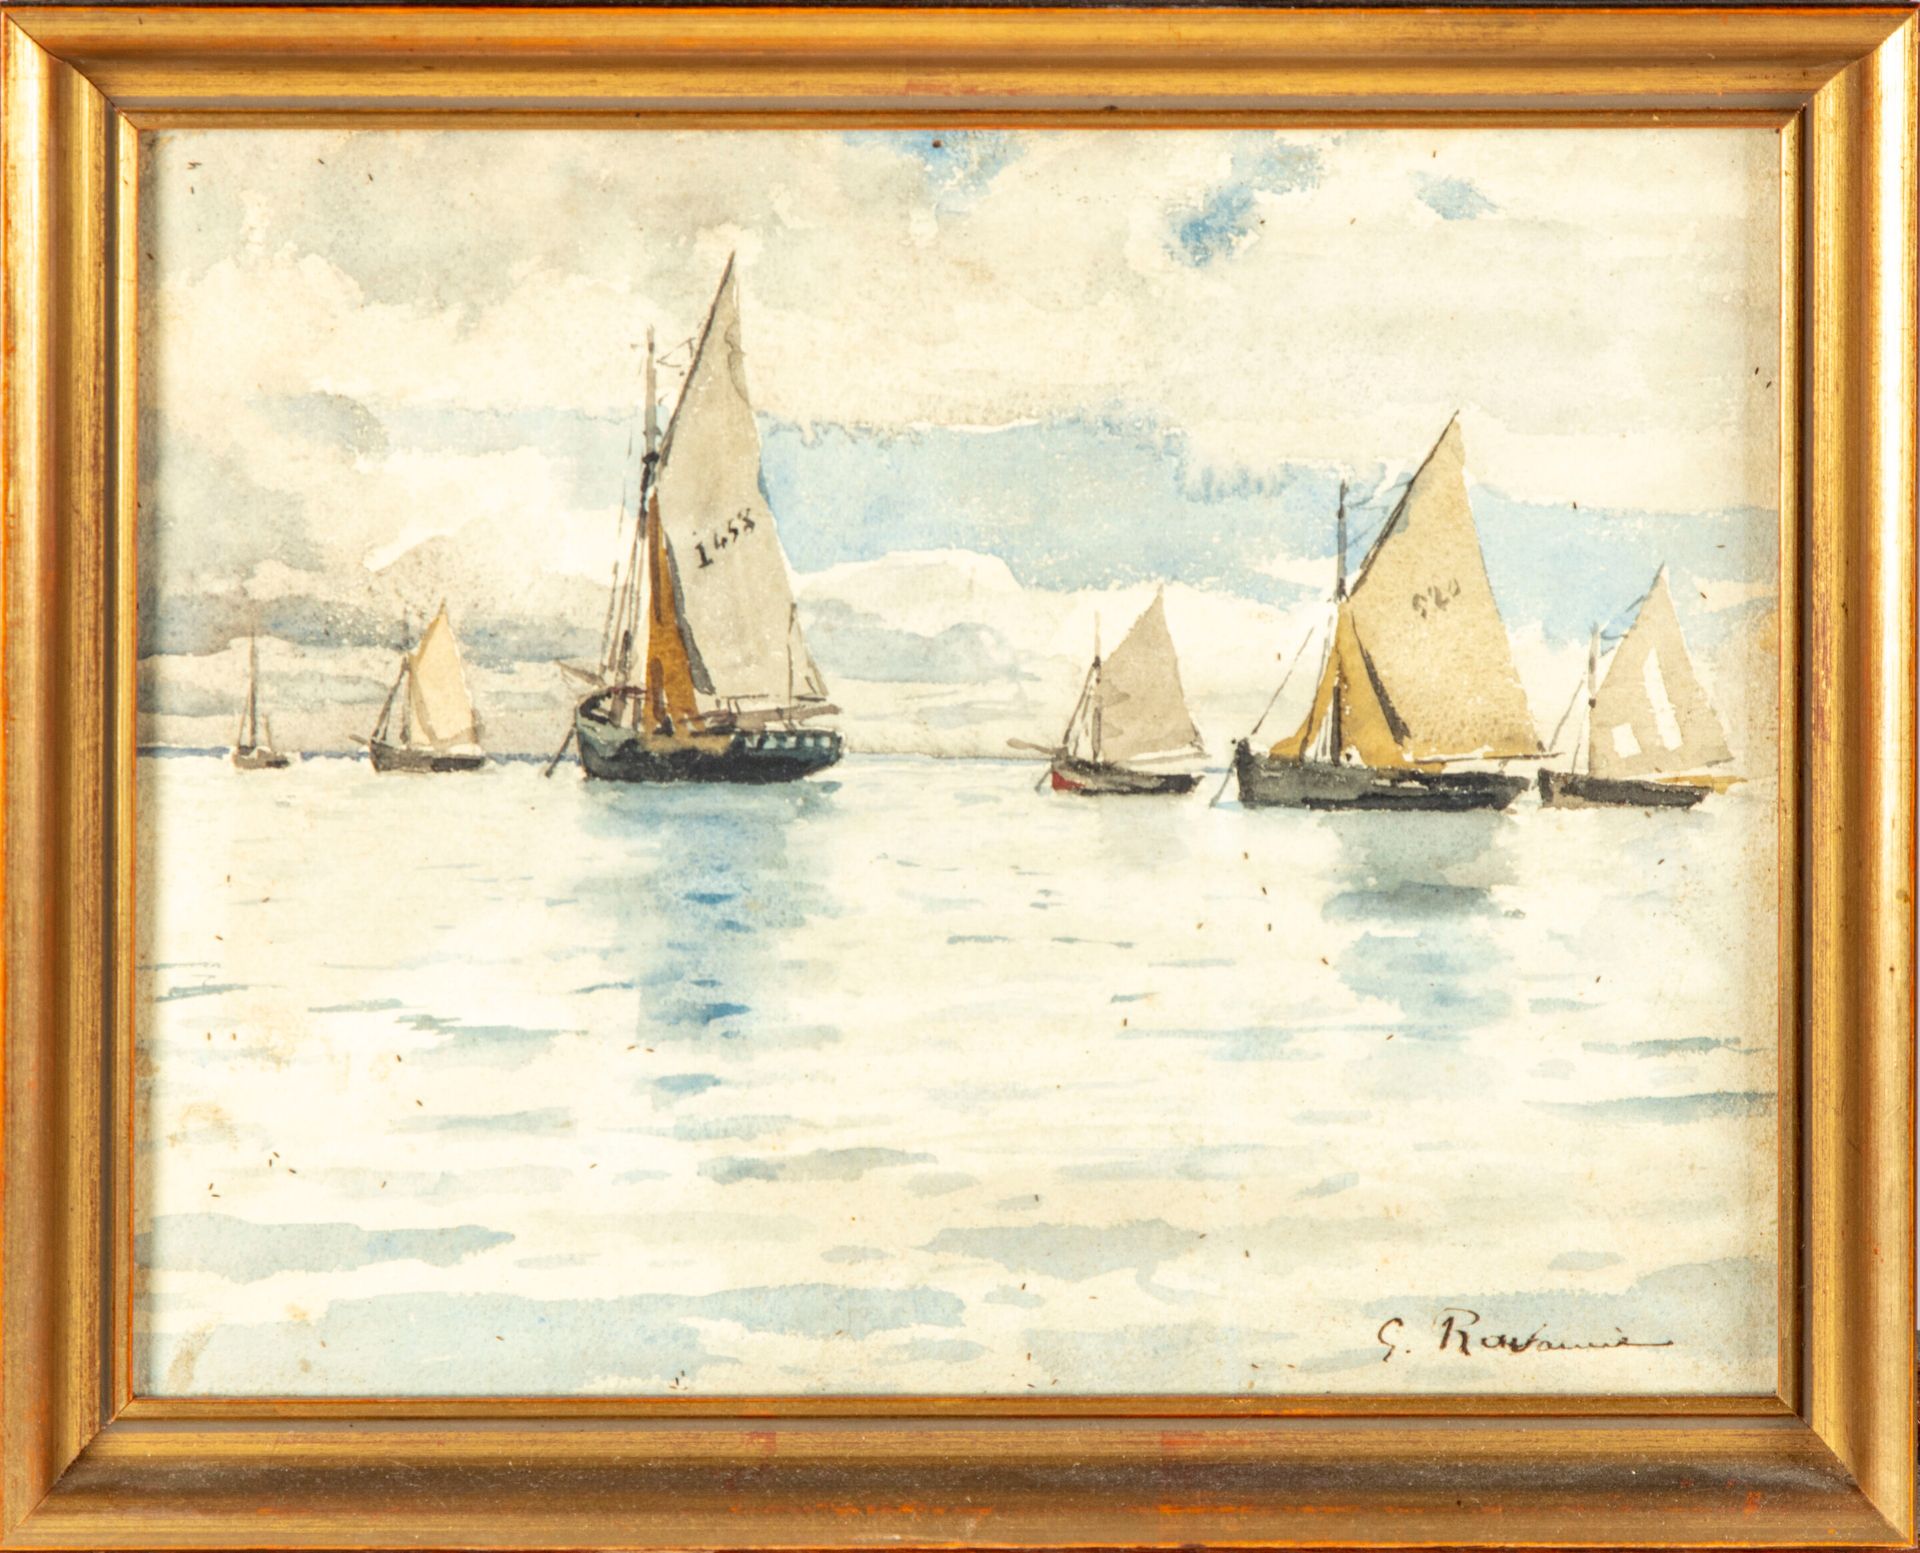 RAVANNE Léon Gustave RAVANNE (1854-1904)

Boote auf dem Meer 

Aquarell, unten r&hellip;